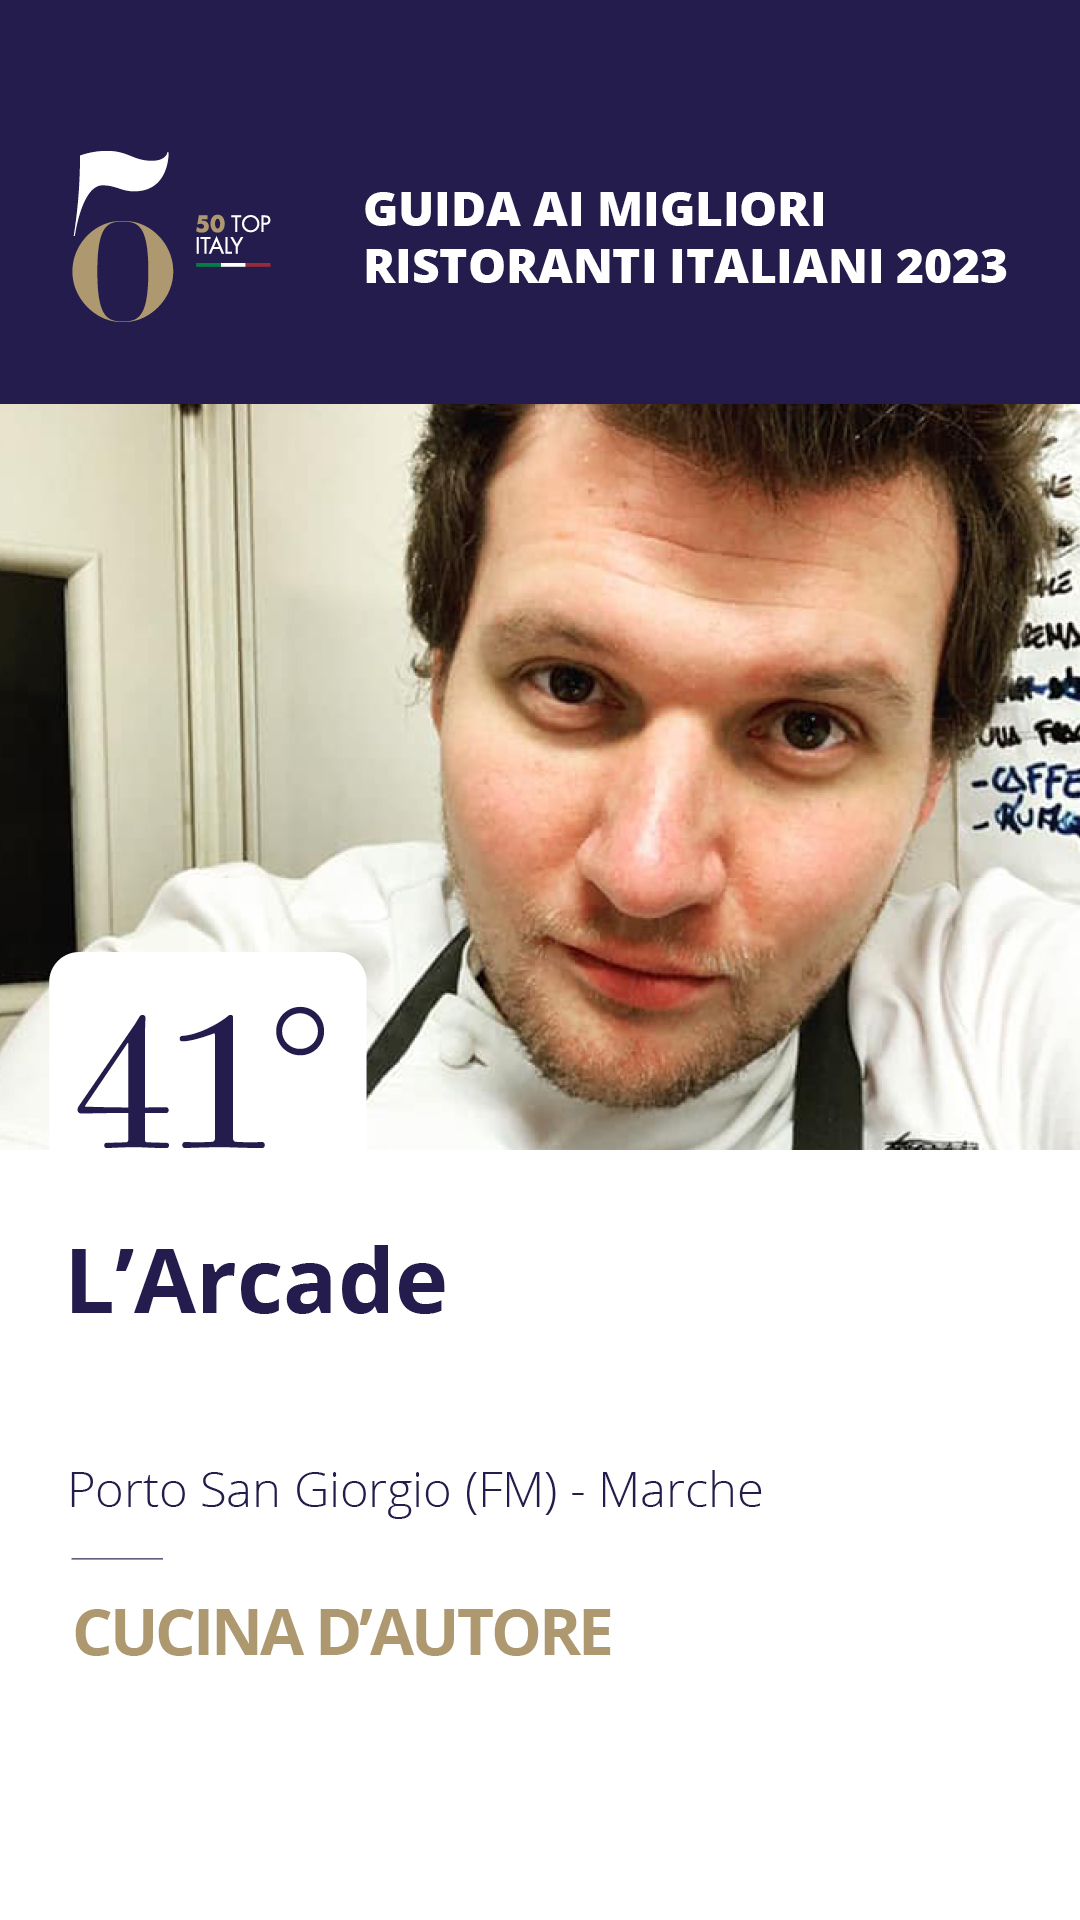 41 - L'Arcade